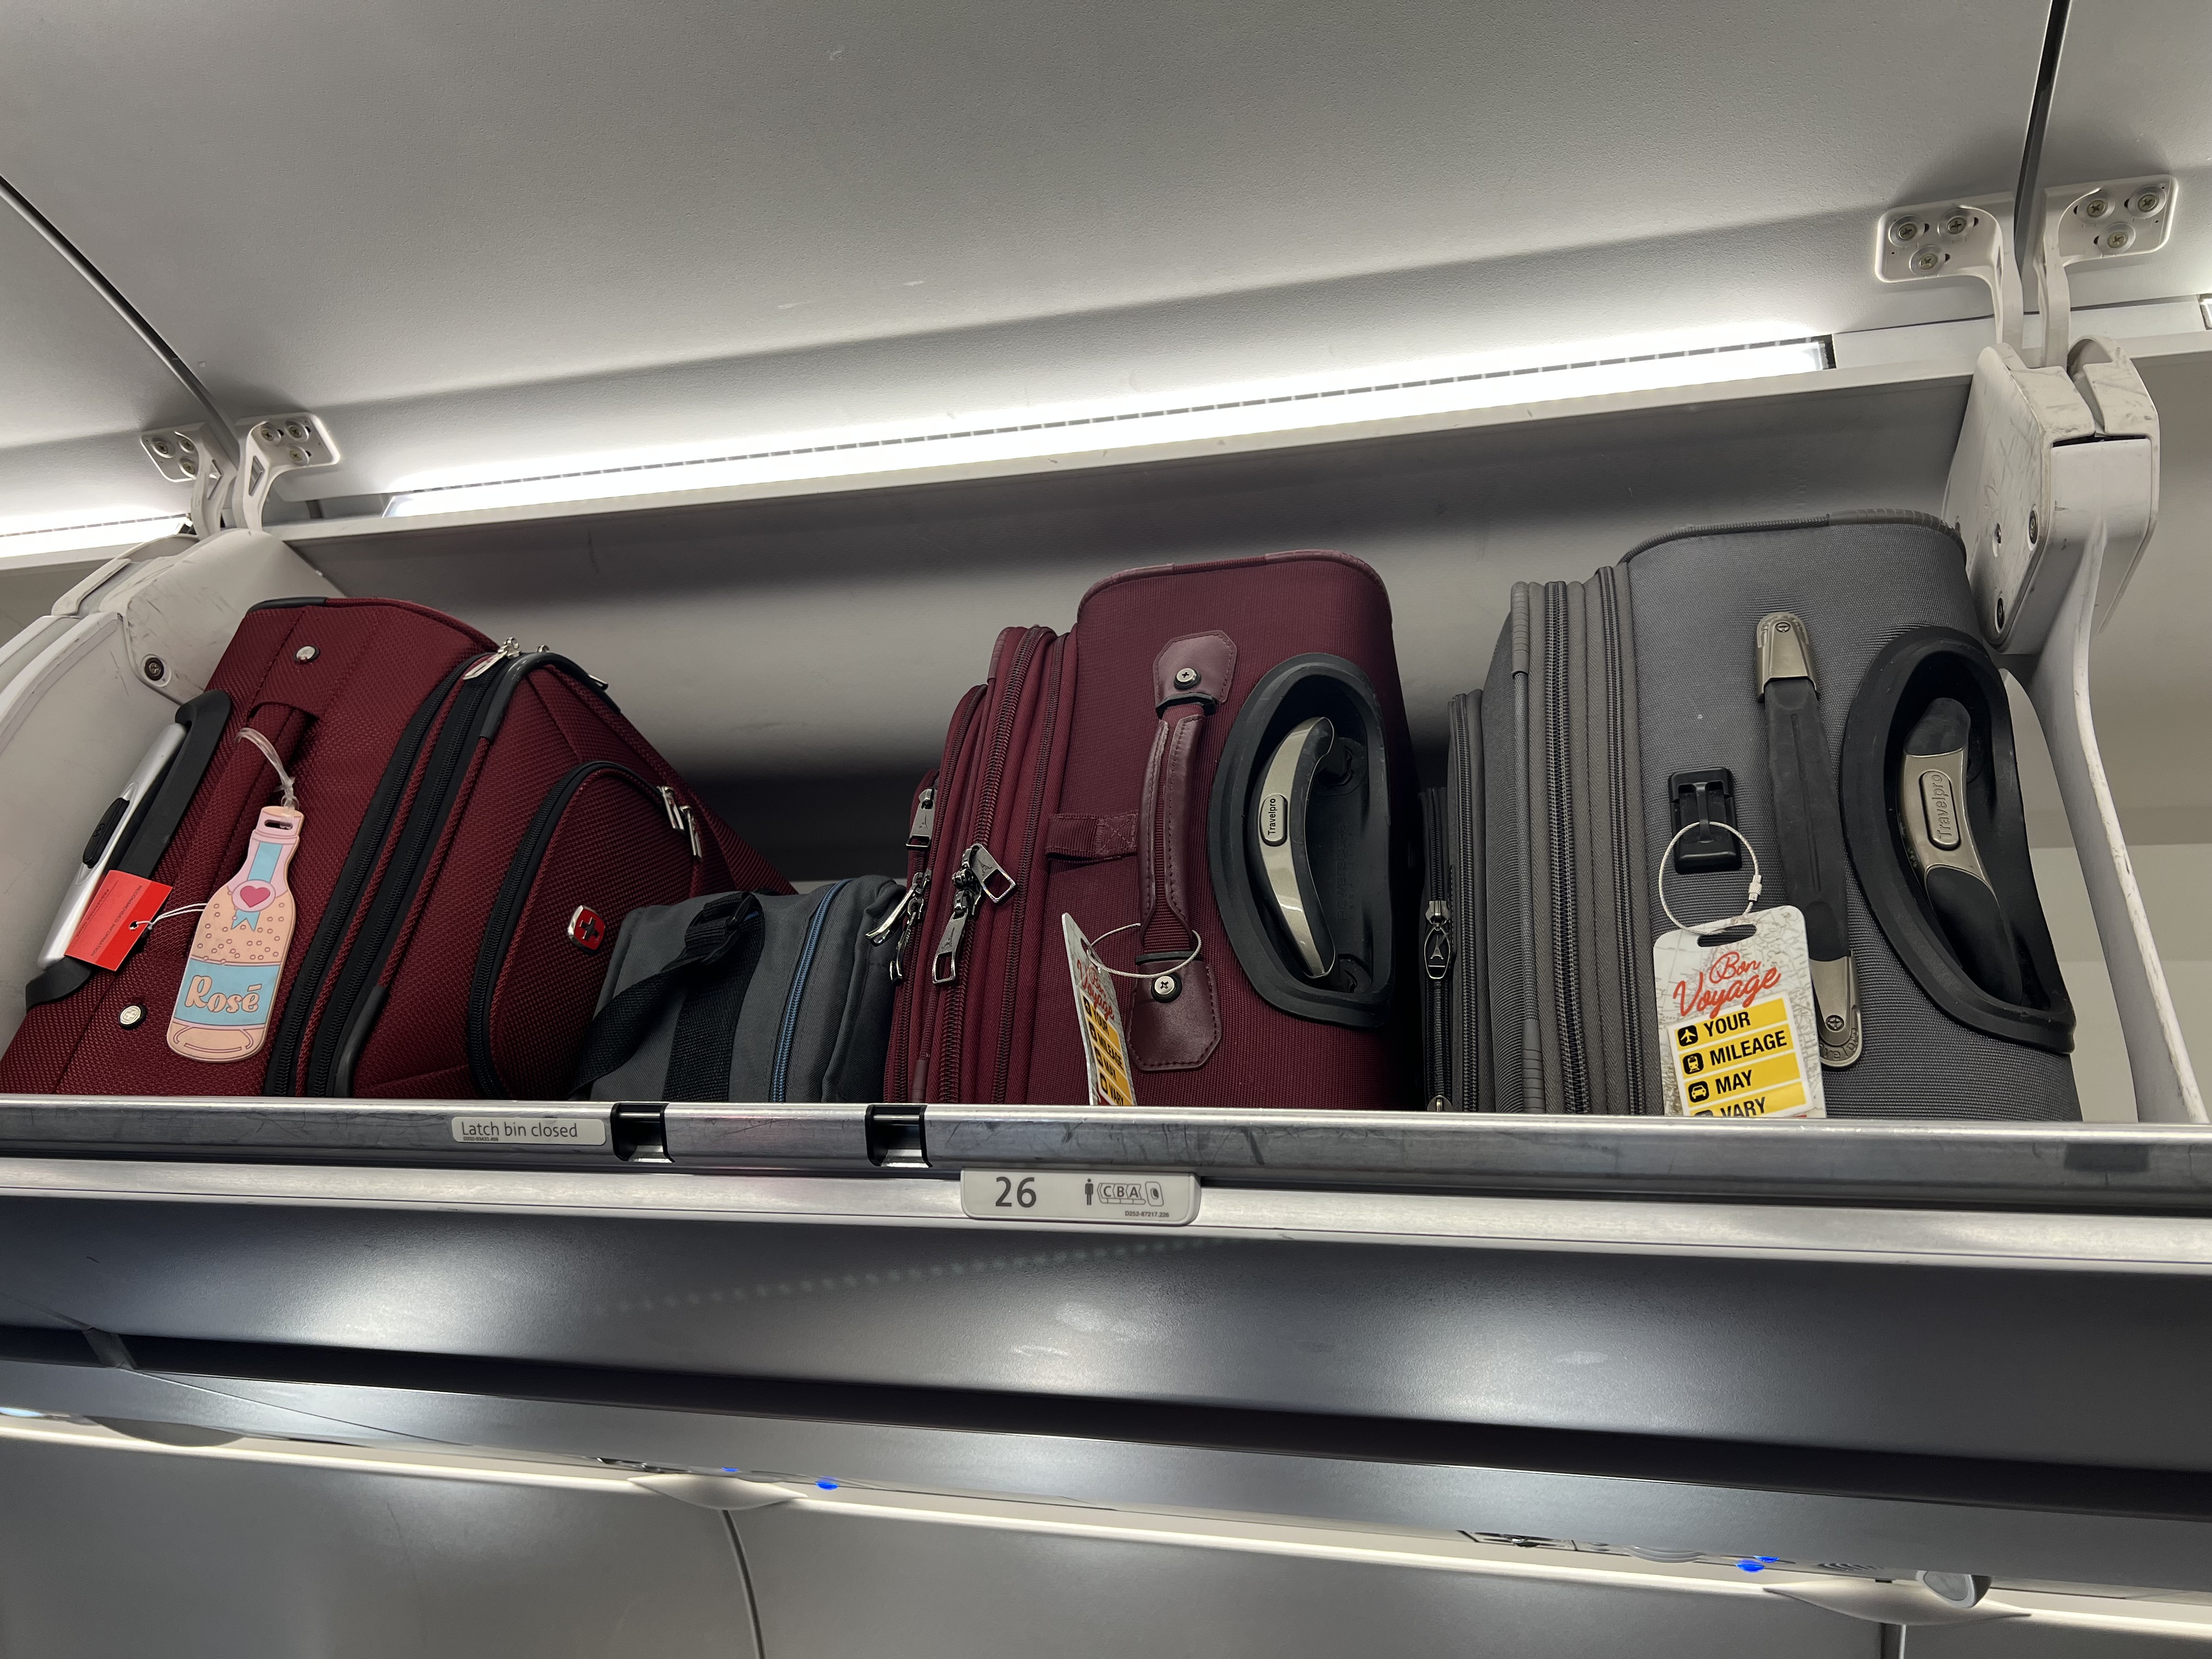 a group of luggage on a shelf